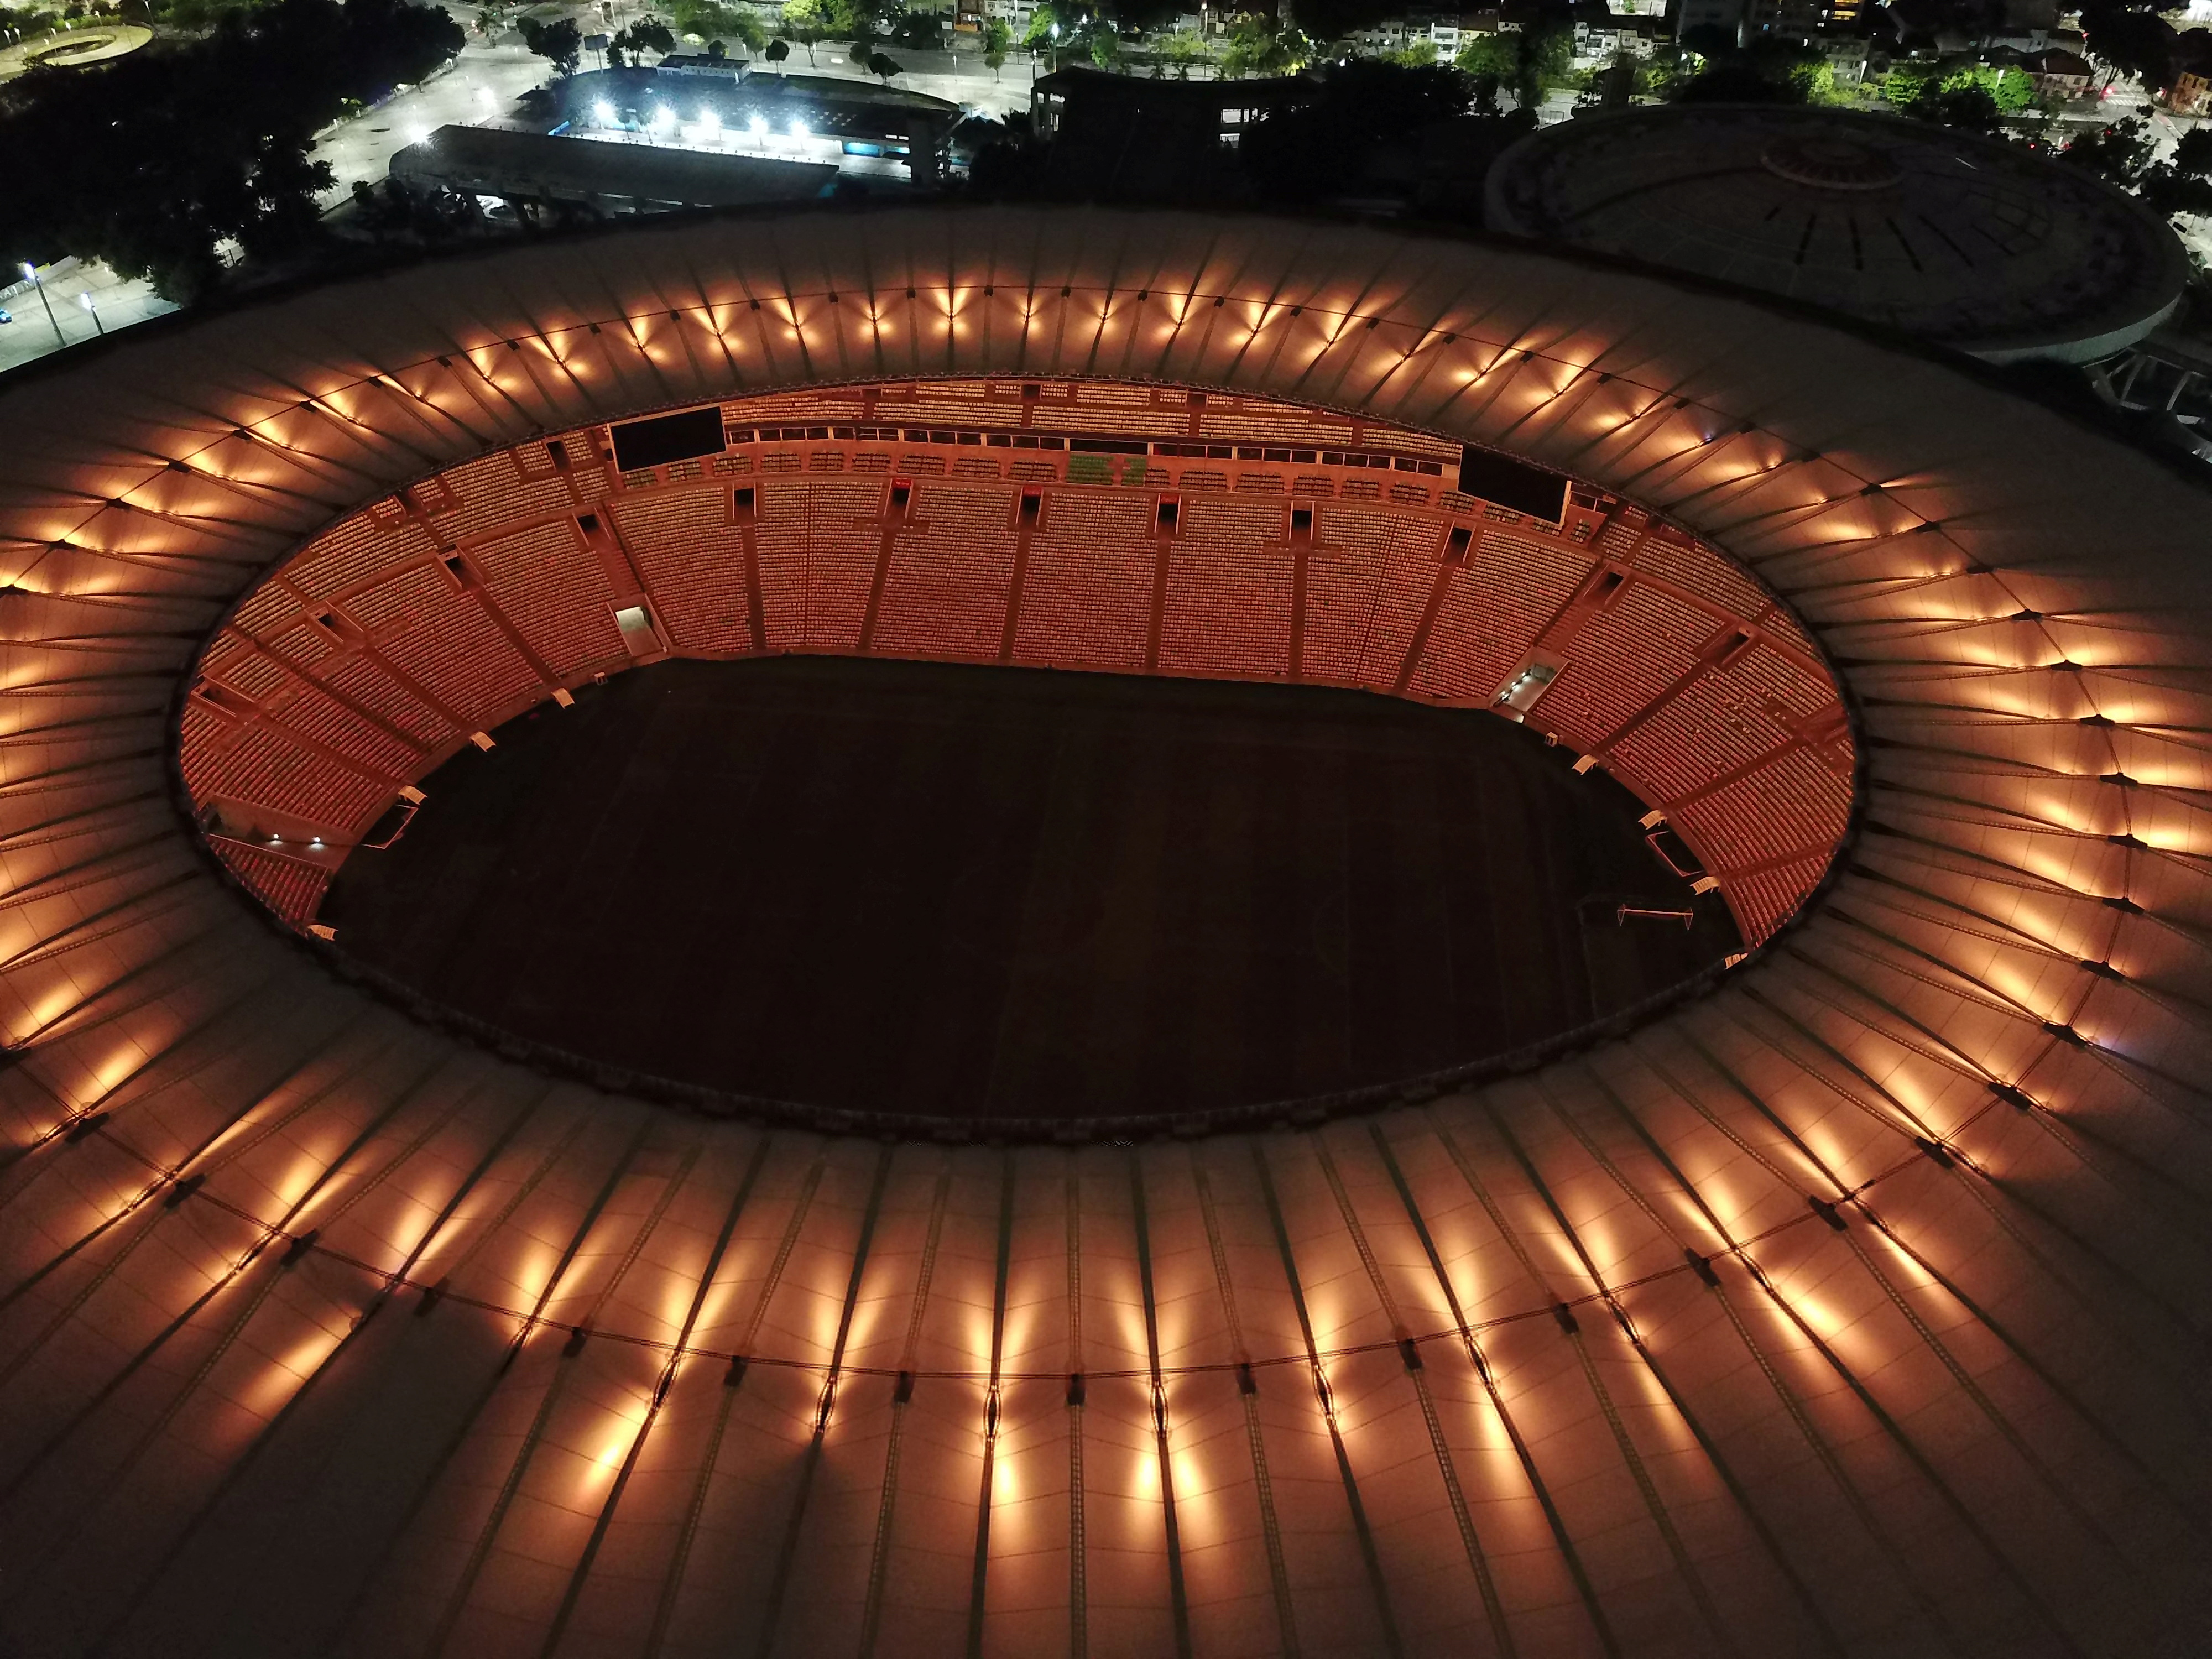 El Maracaná, estadio donde Pelé hizo su gol número 1.000 en 1969, se iluminó al caer la tarde para rendirle tributo al “Rey”.  (REUTERS)